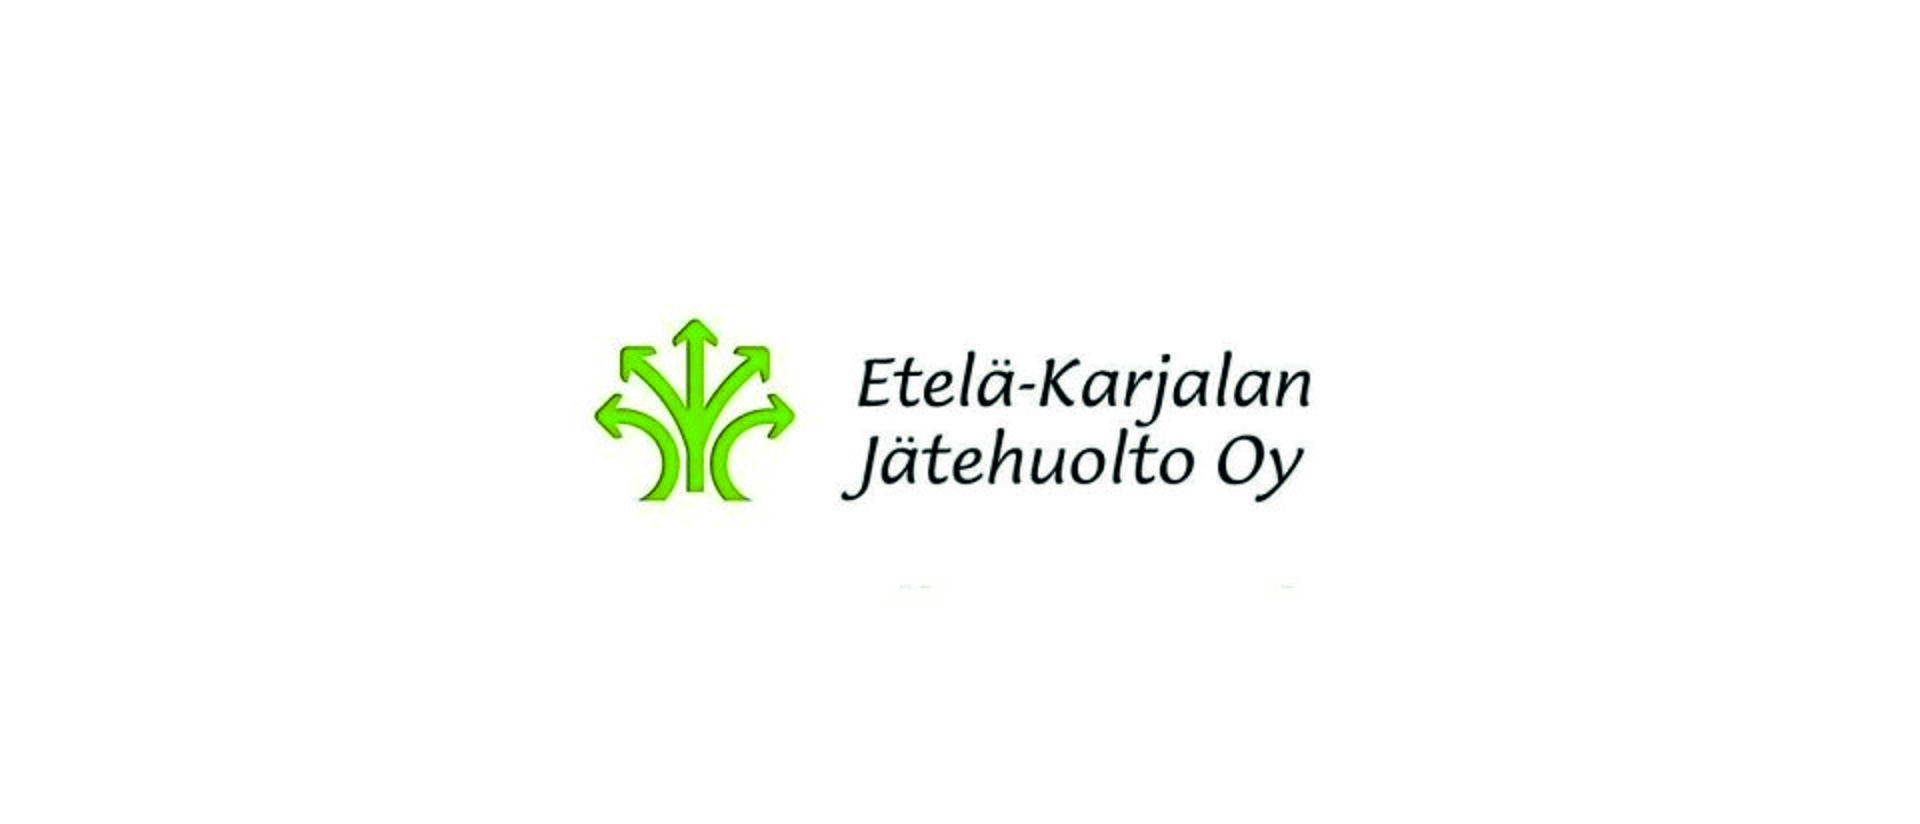 Etelä-Karjalan jätehuolto Oy:n logo